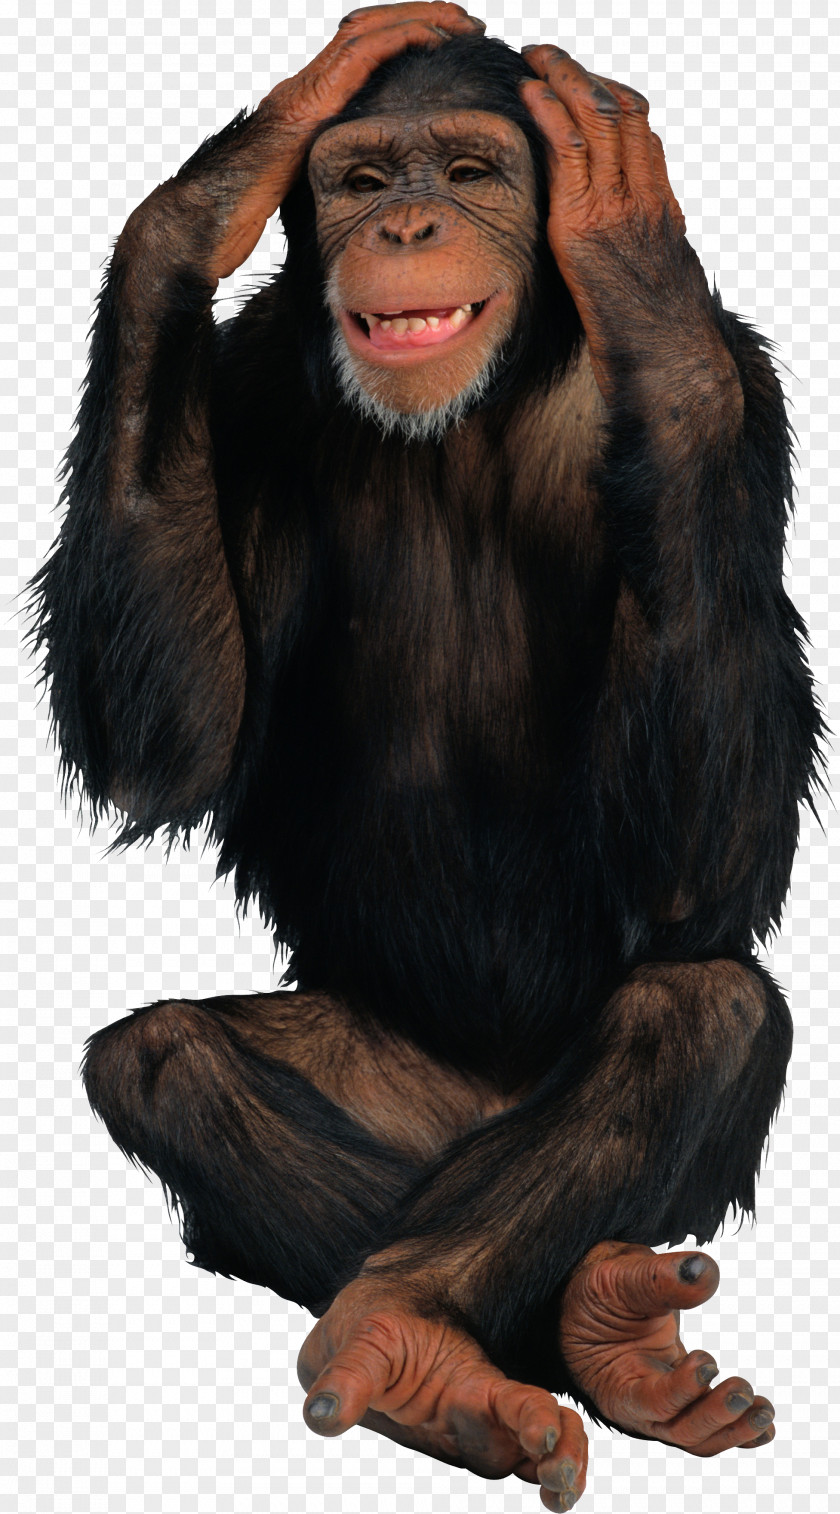 Black Gorilla Chimpanzee Monkey Desktop Wallpaper Clip Art PNG